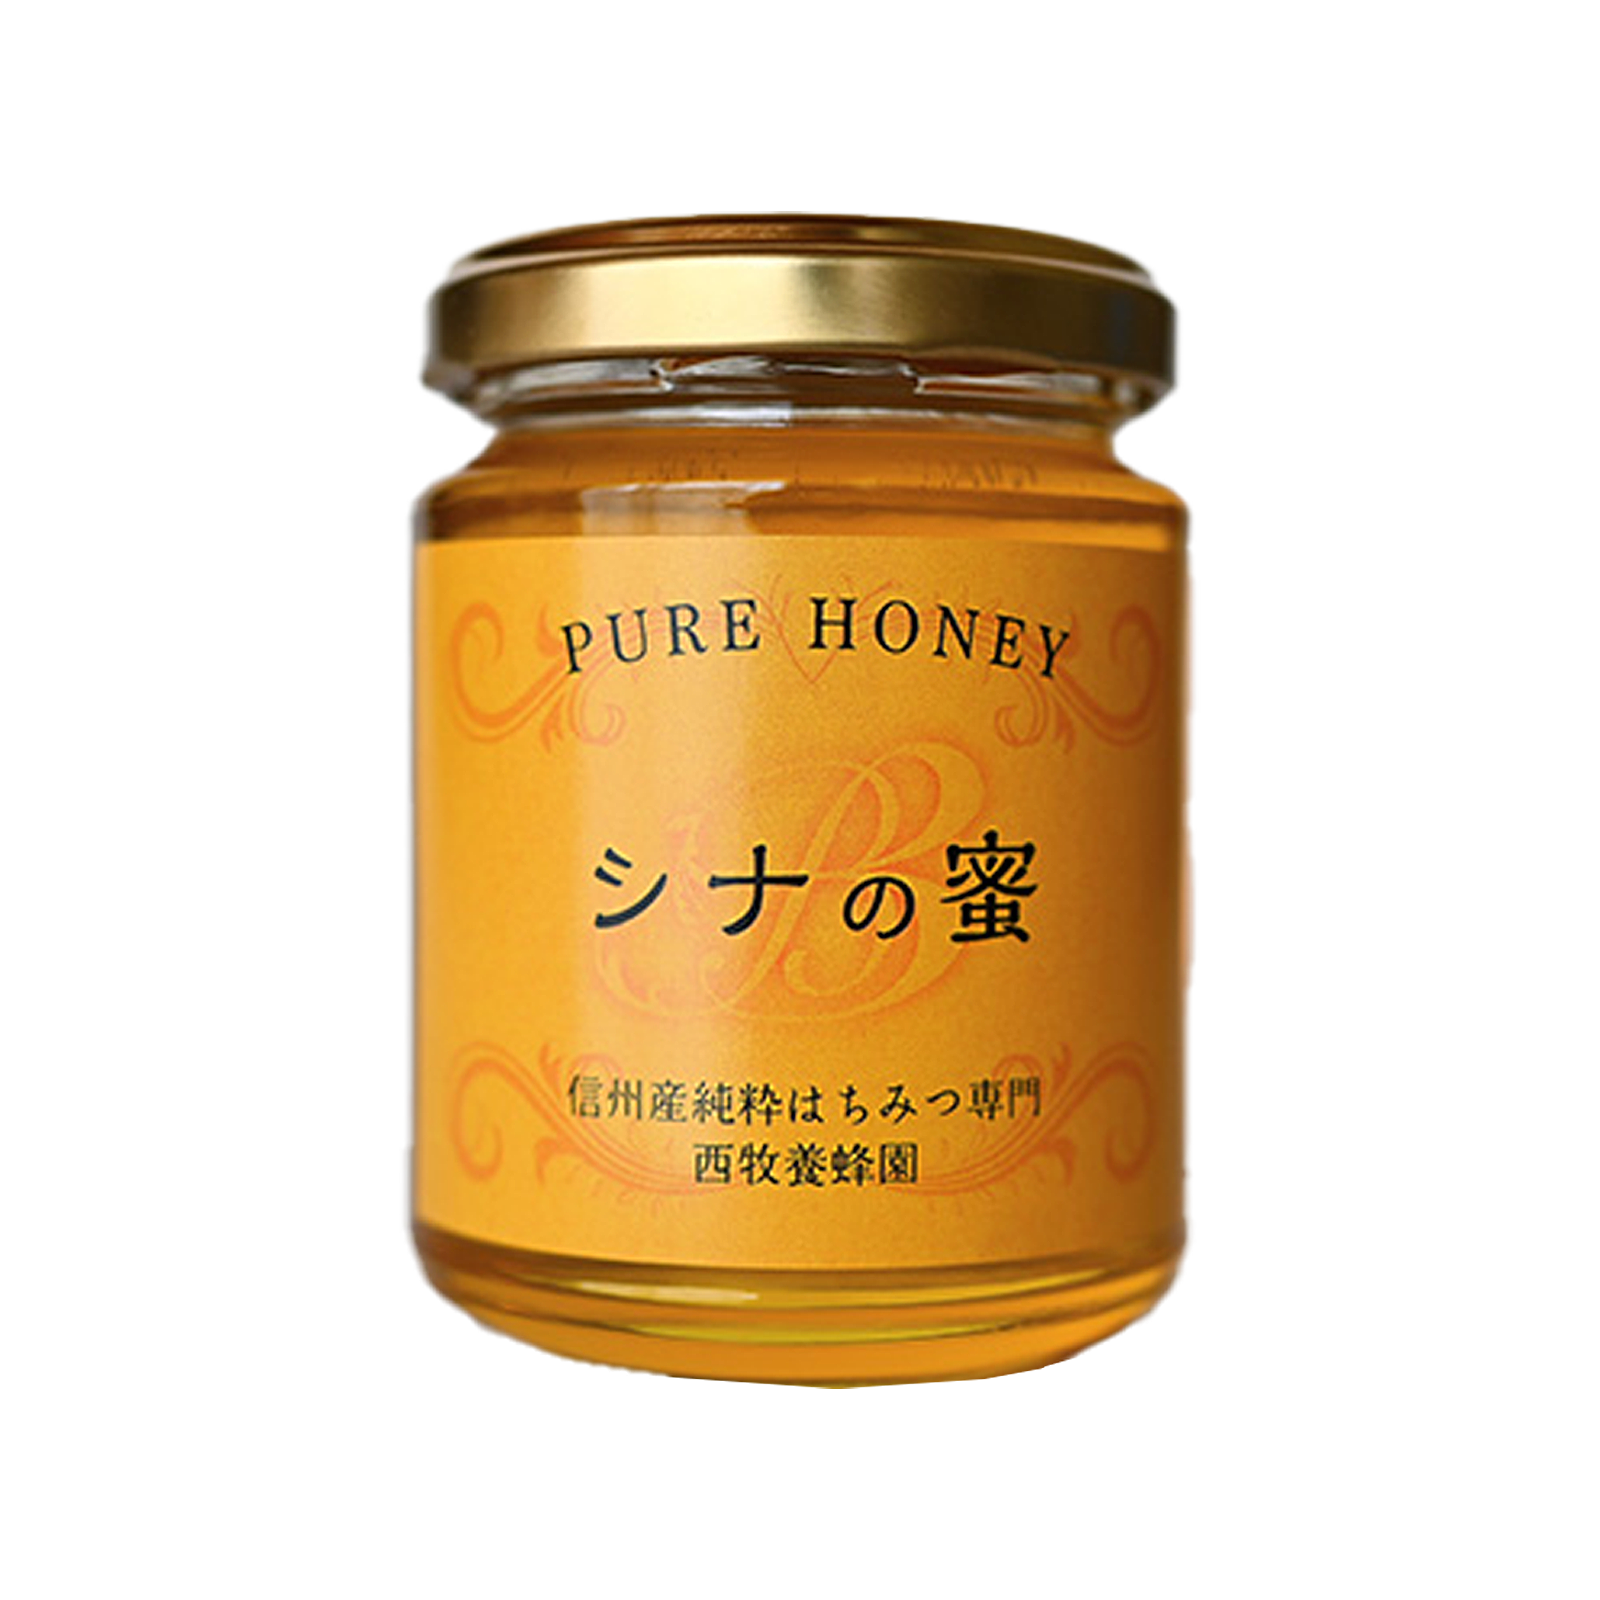 生蜂蜜 天然 はちみつ シナ 菩提樹 国産 (170g) ホライズンファームズ